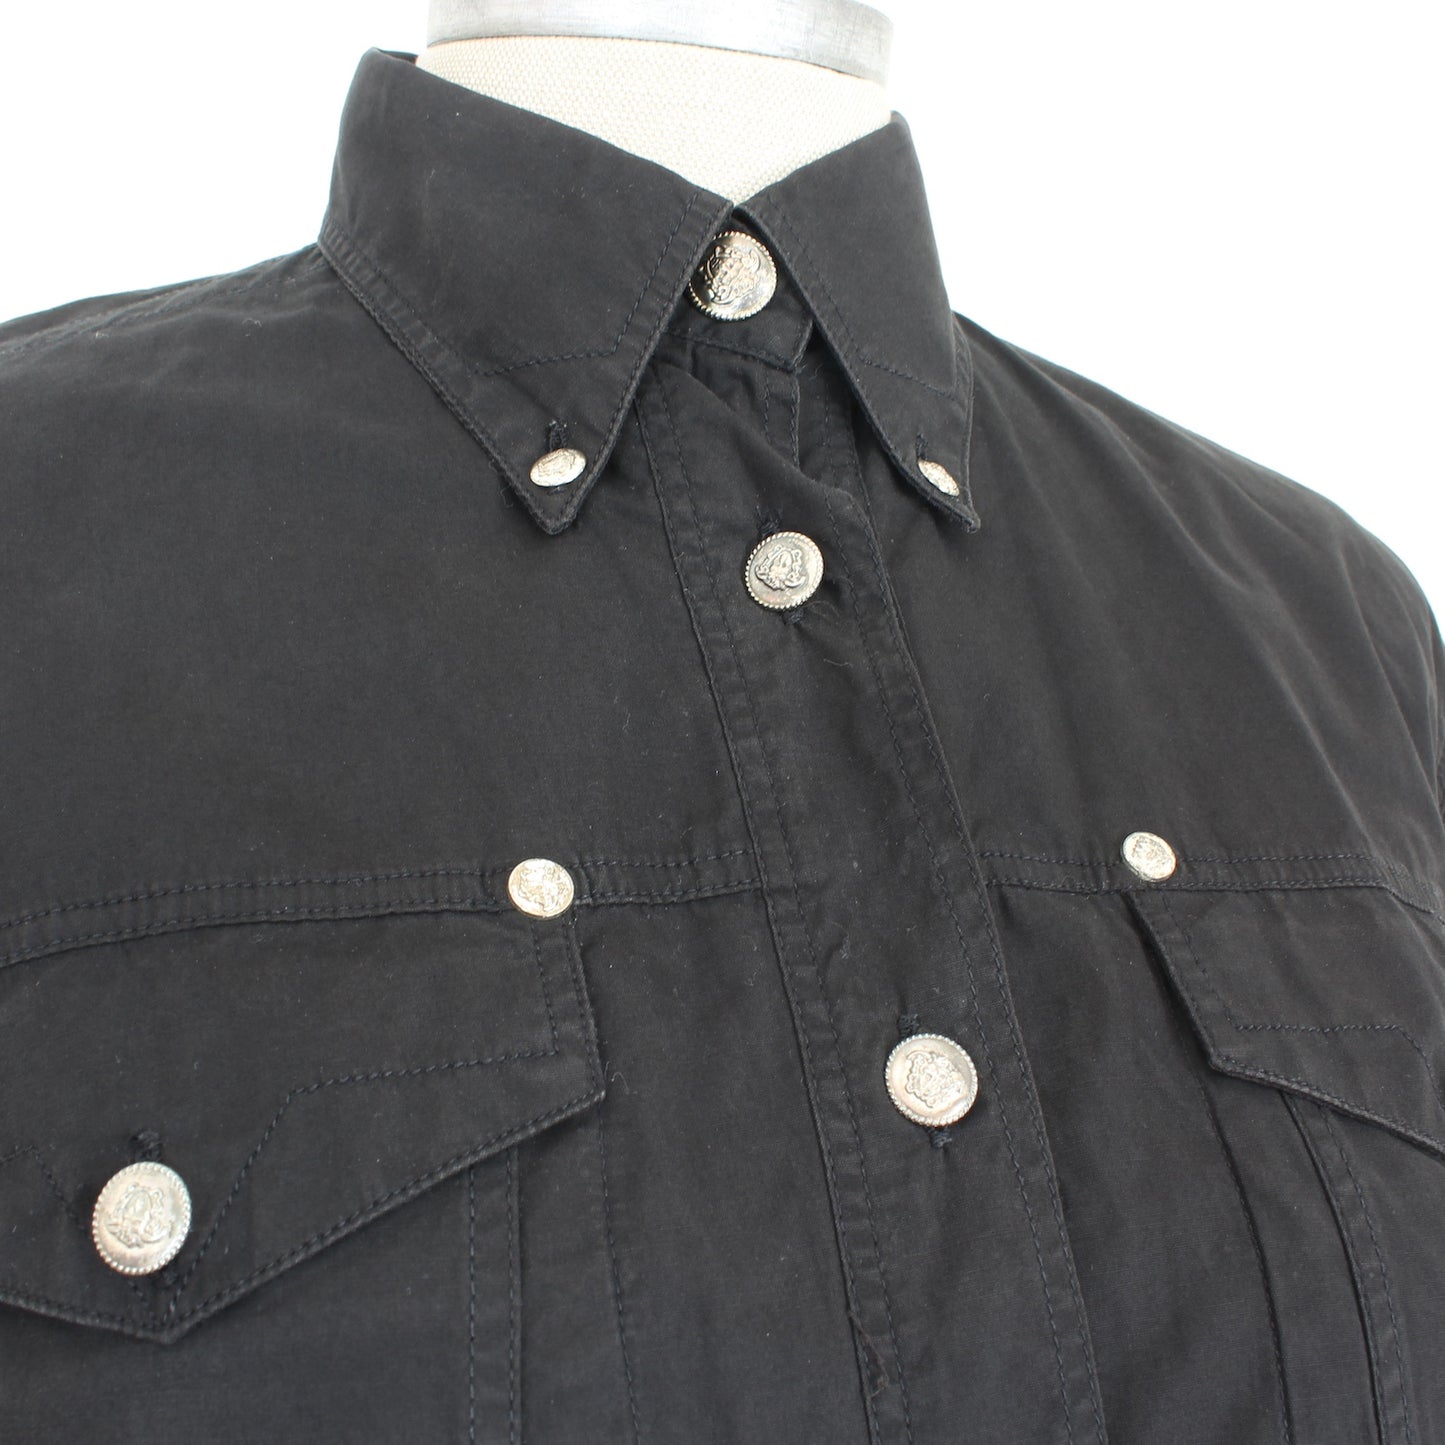 Versace Black Cotton Shirt Vintage 1990s